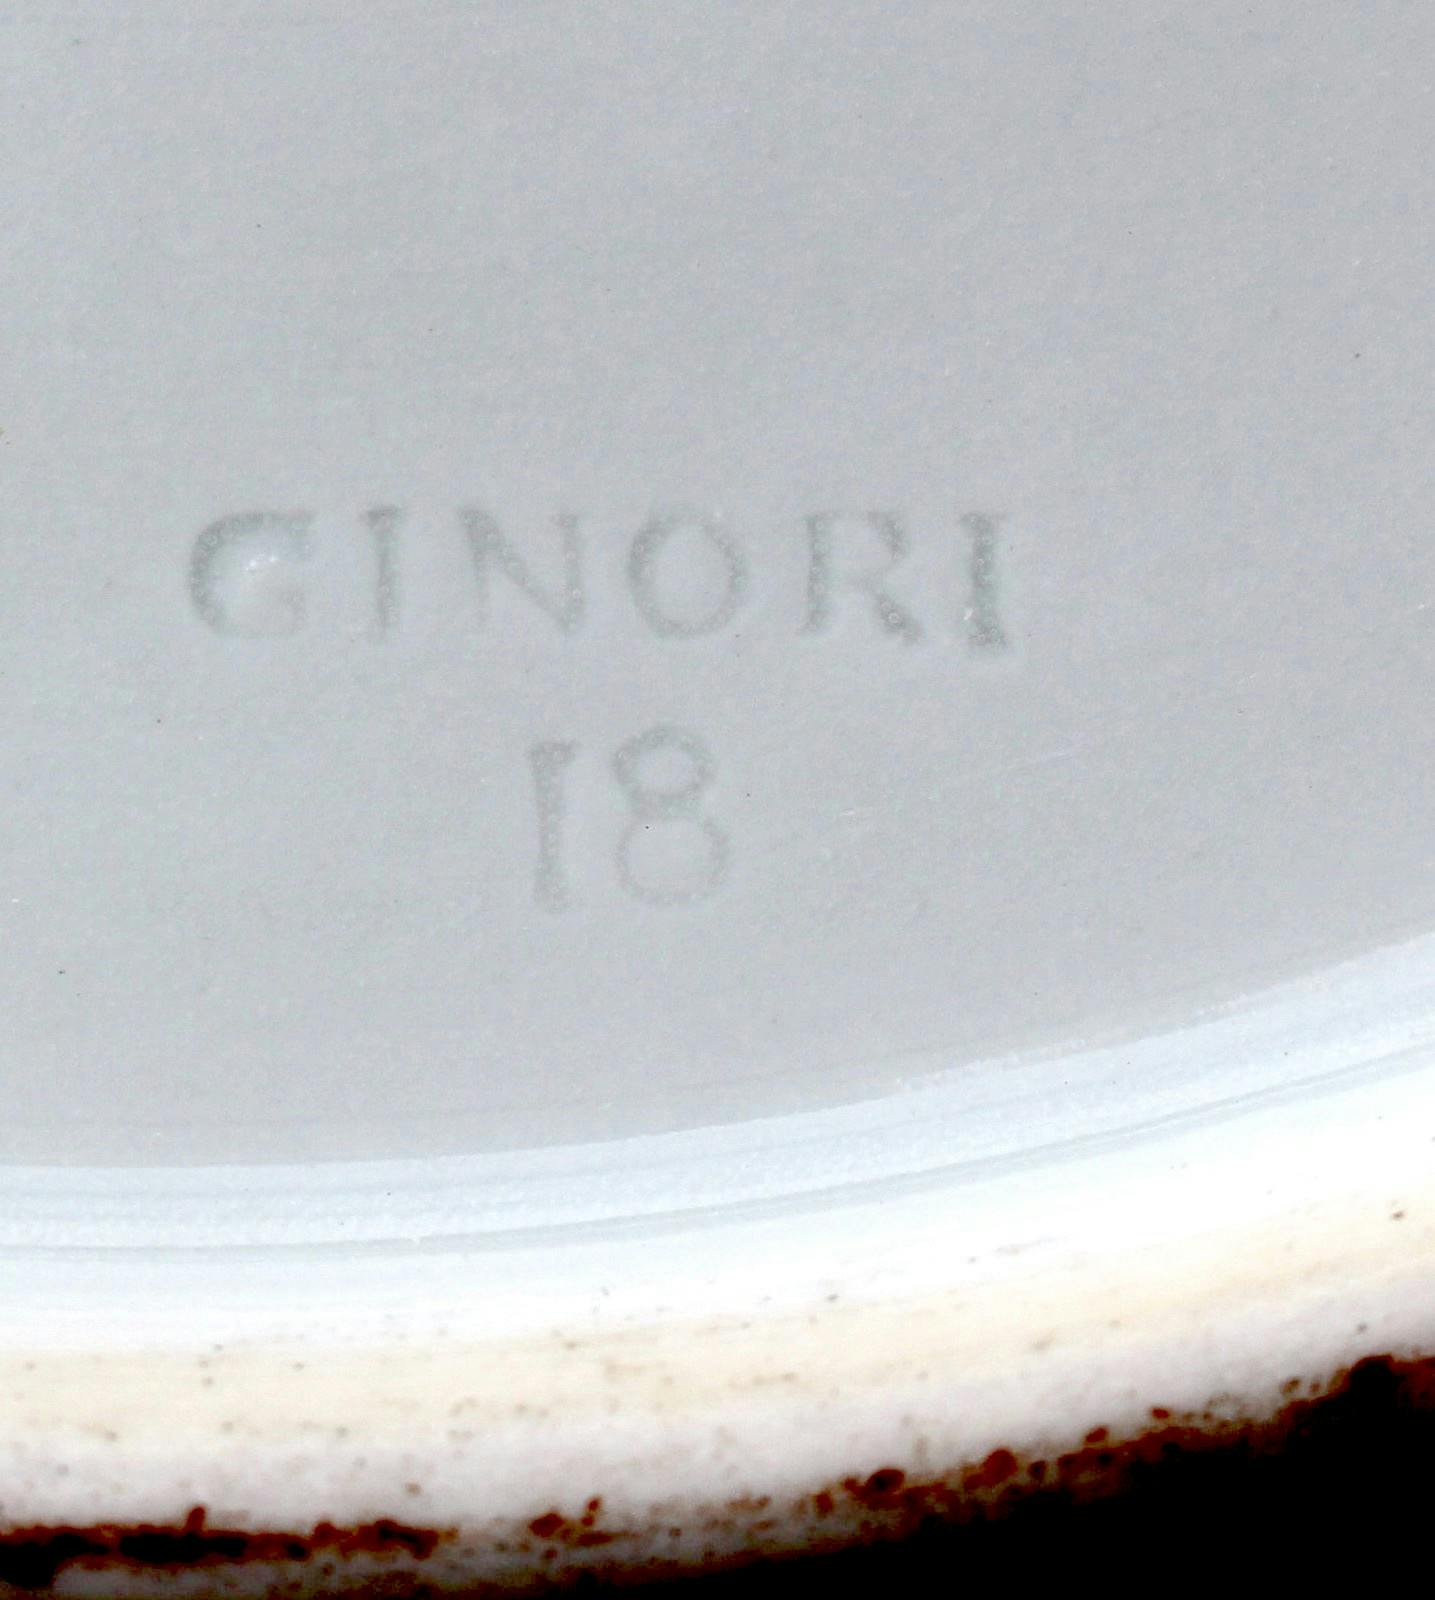 Scritta GINORI impressa nella porcellana, con sotto il numnero 18